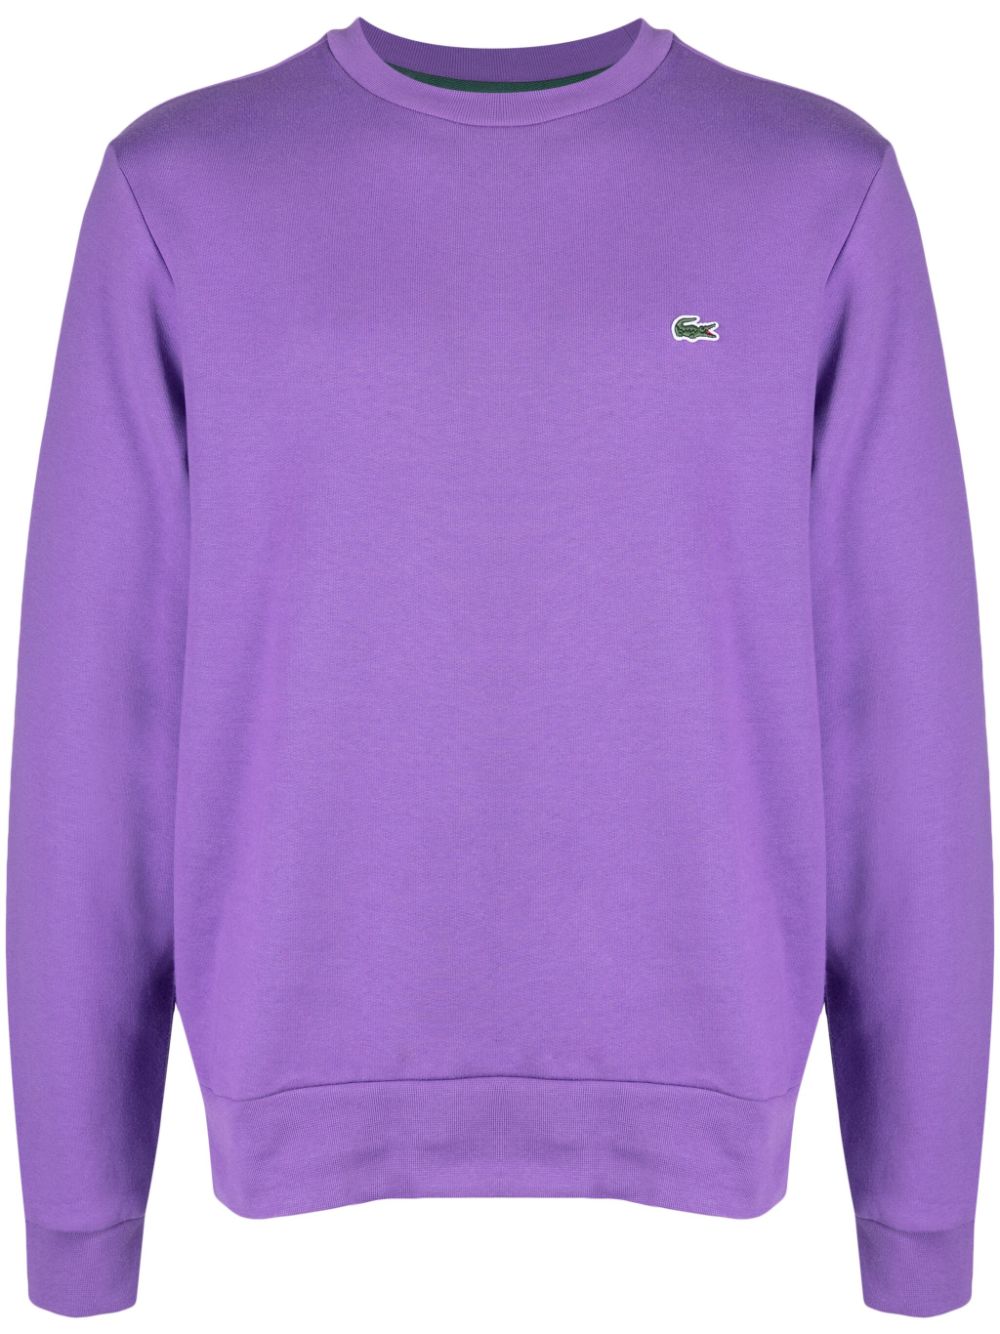 Lacoste Sweatshirt mit rundem Ausschnitt - Violett von Lacoste